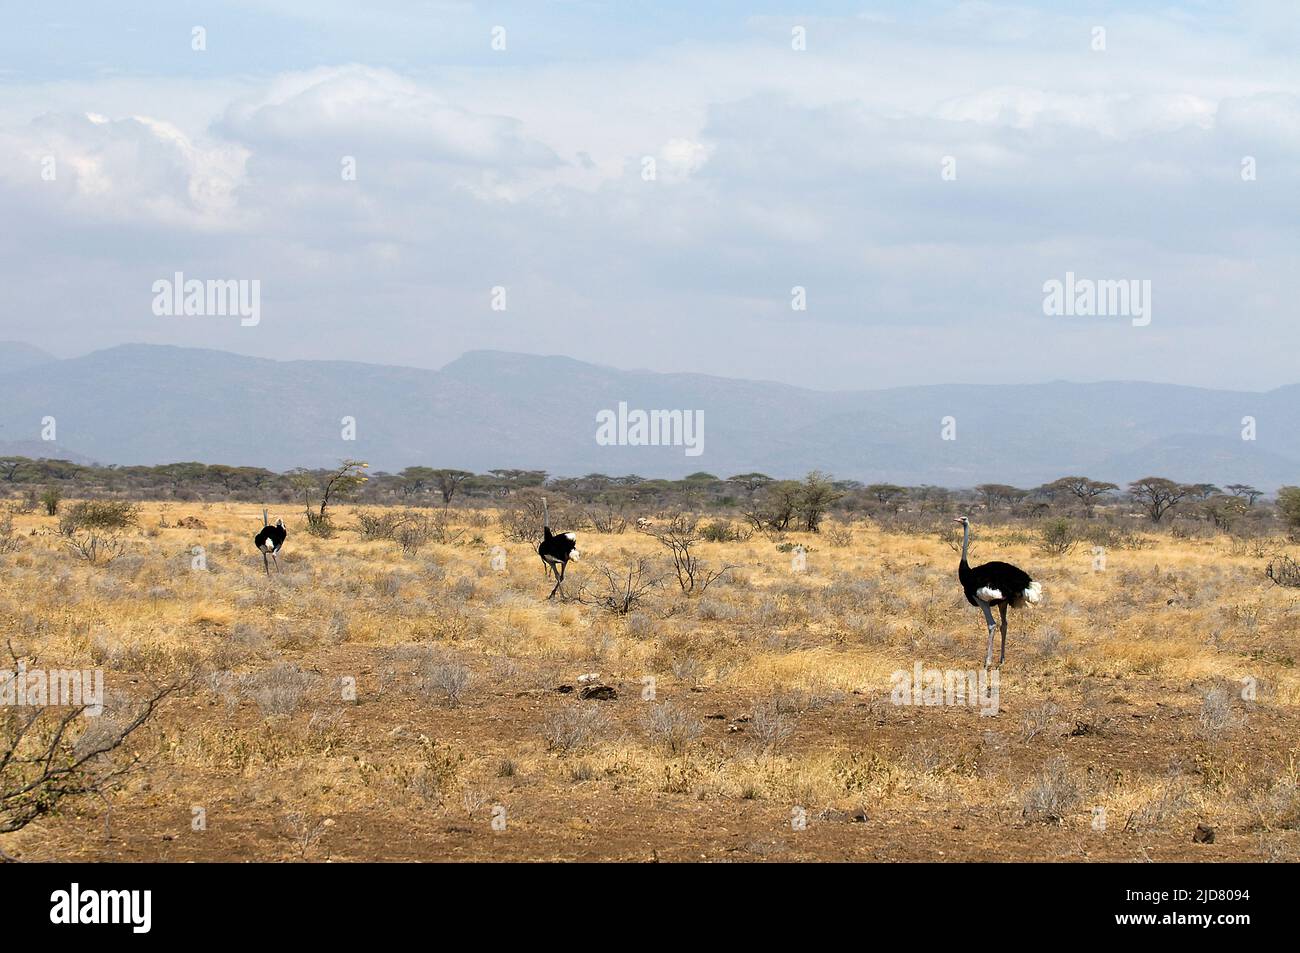 La savane de Dray et le Bush de la réserve nationale de Samburu abritent l'Ostrich somalien, une espèce nord de grands oiseaux sans vol. Banque D'Images